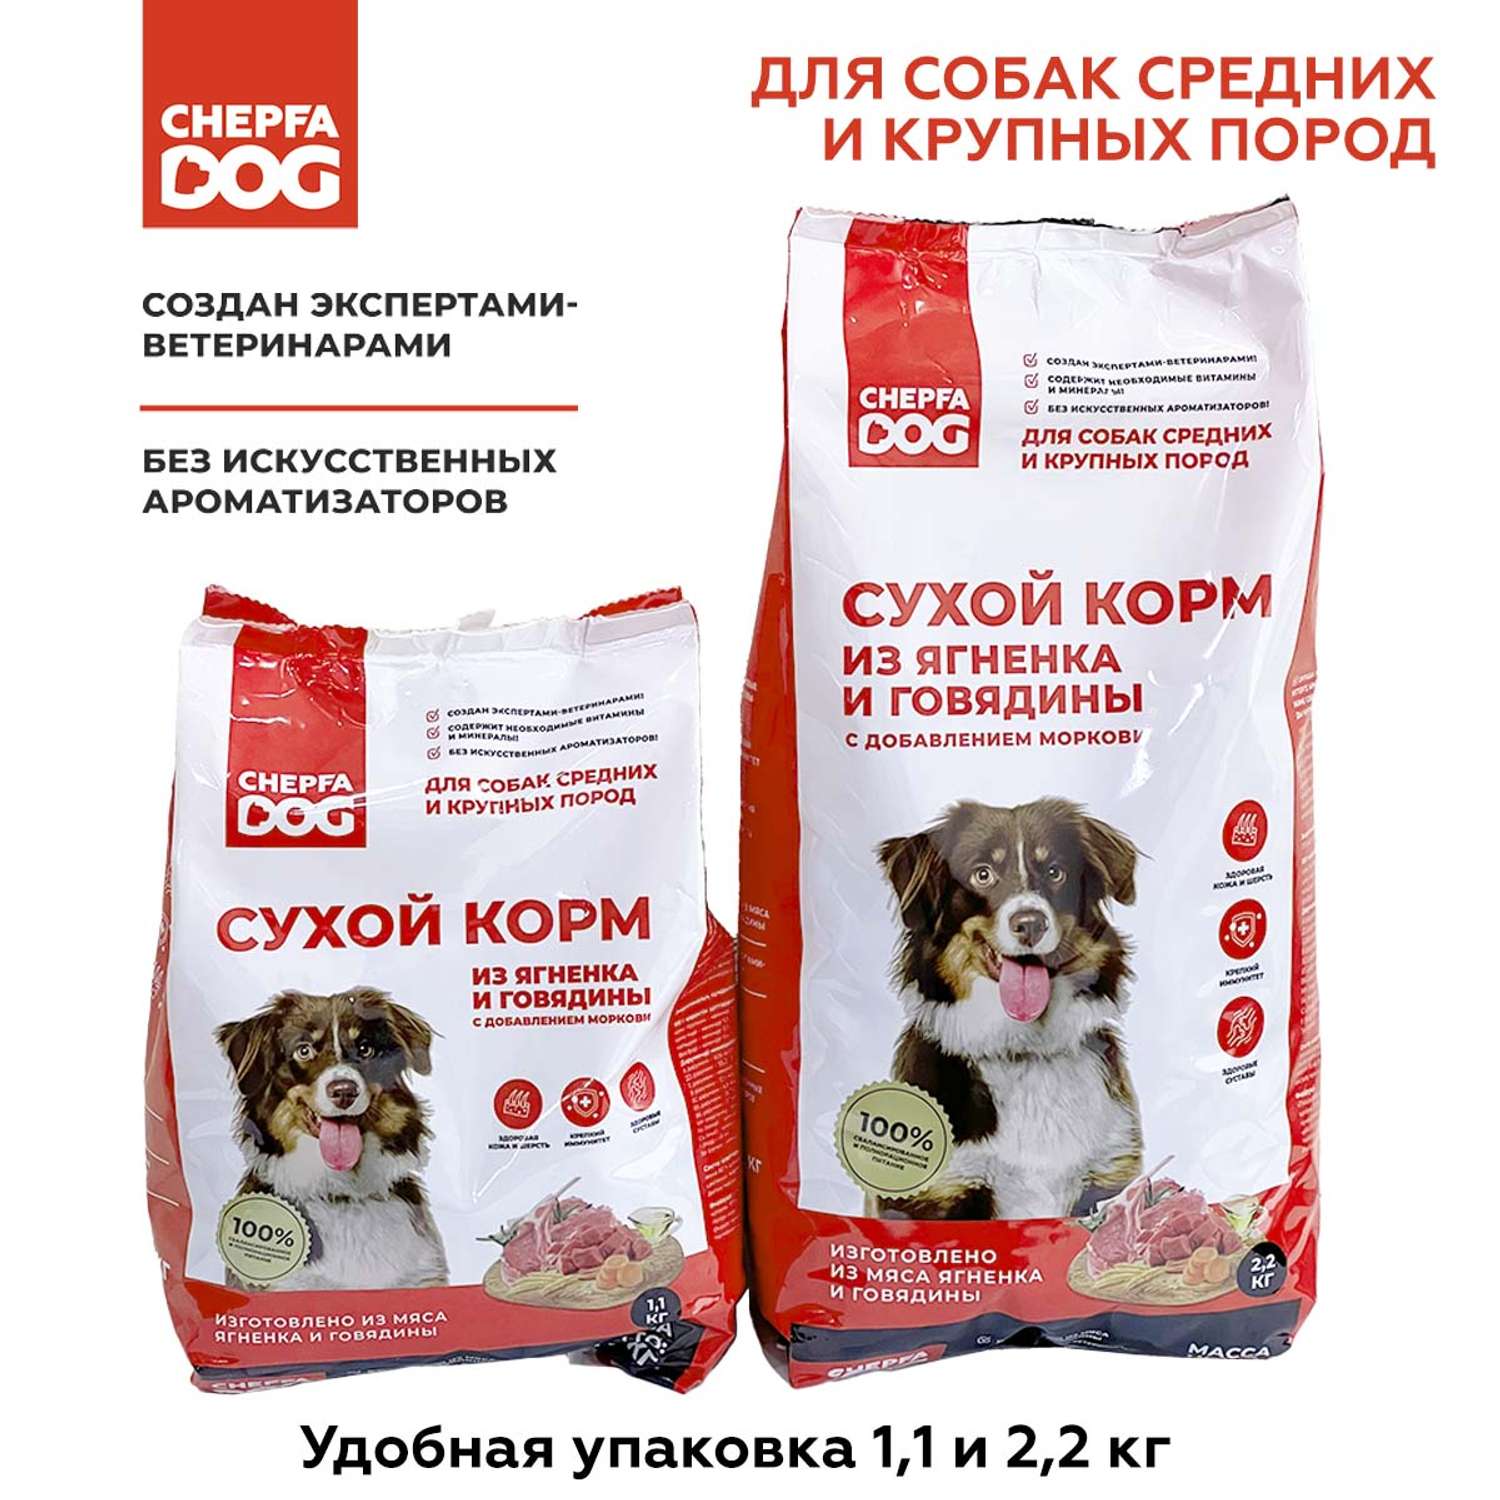 Сухой корм Chepfa Dog полнорационный ягненок и говядина 1.1 кг для взрослых собак средних и крупных пород - фото 7